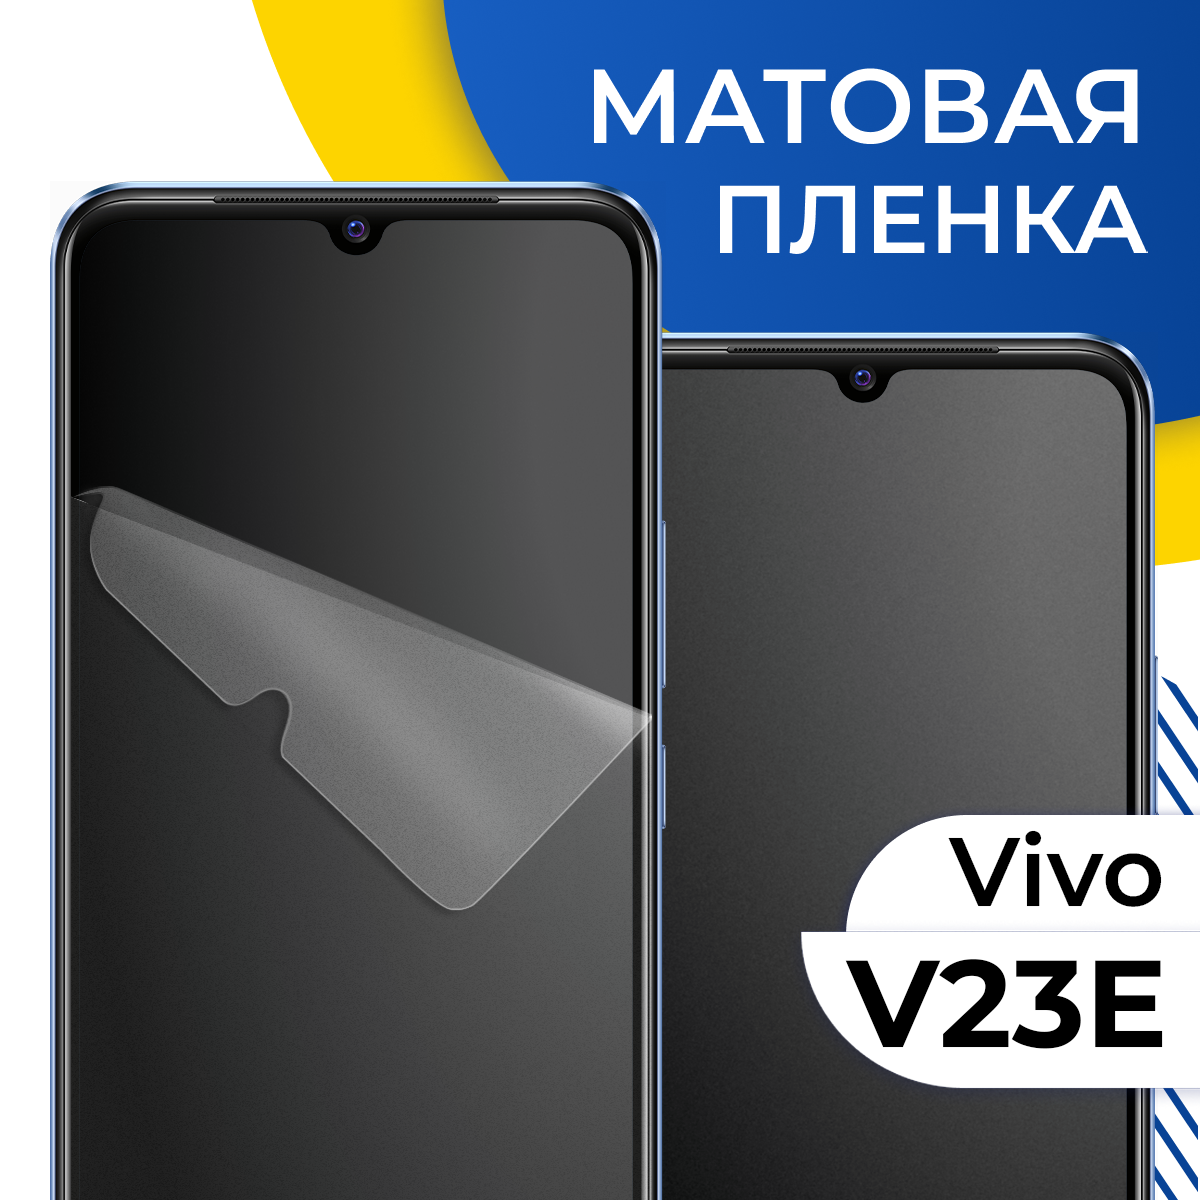 Комплект 2 шт. Матовая гидрогелевая пленка для телефона Vivo V23E / Самовосстанавливающаяся защитная пленка на смартфон Виво В23Е / Противоударная